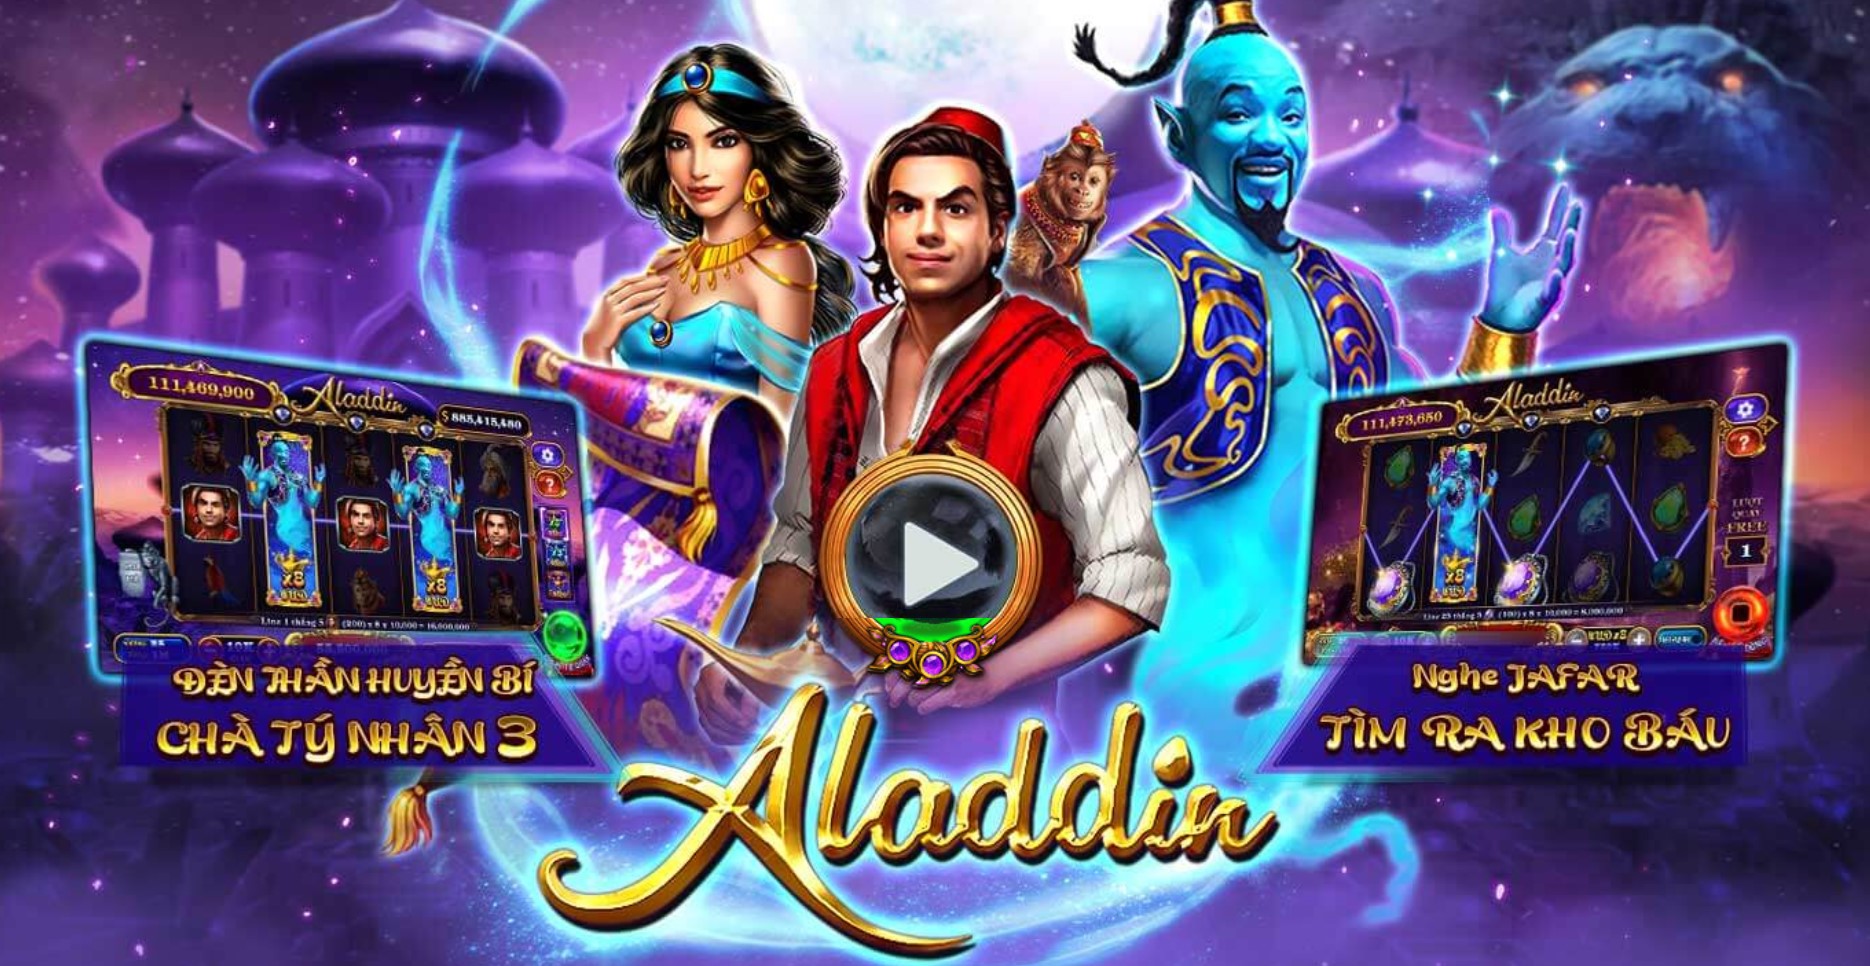 Kiếm tiền khủng từ game nổ hũ Aladdin trên UK88